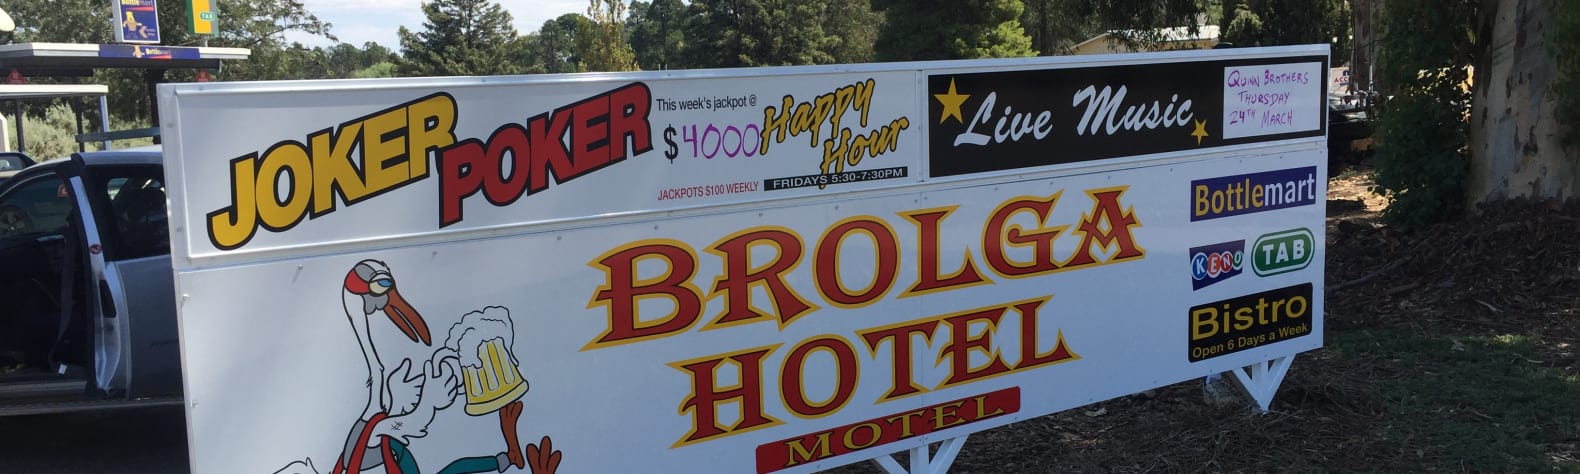 Brolga Hotel Motel